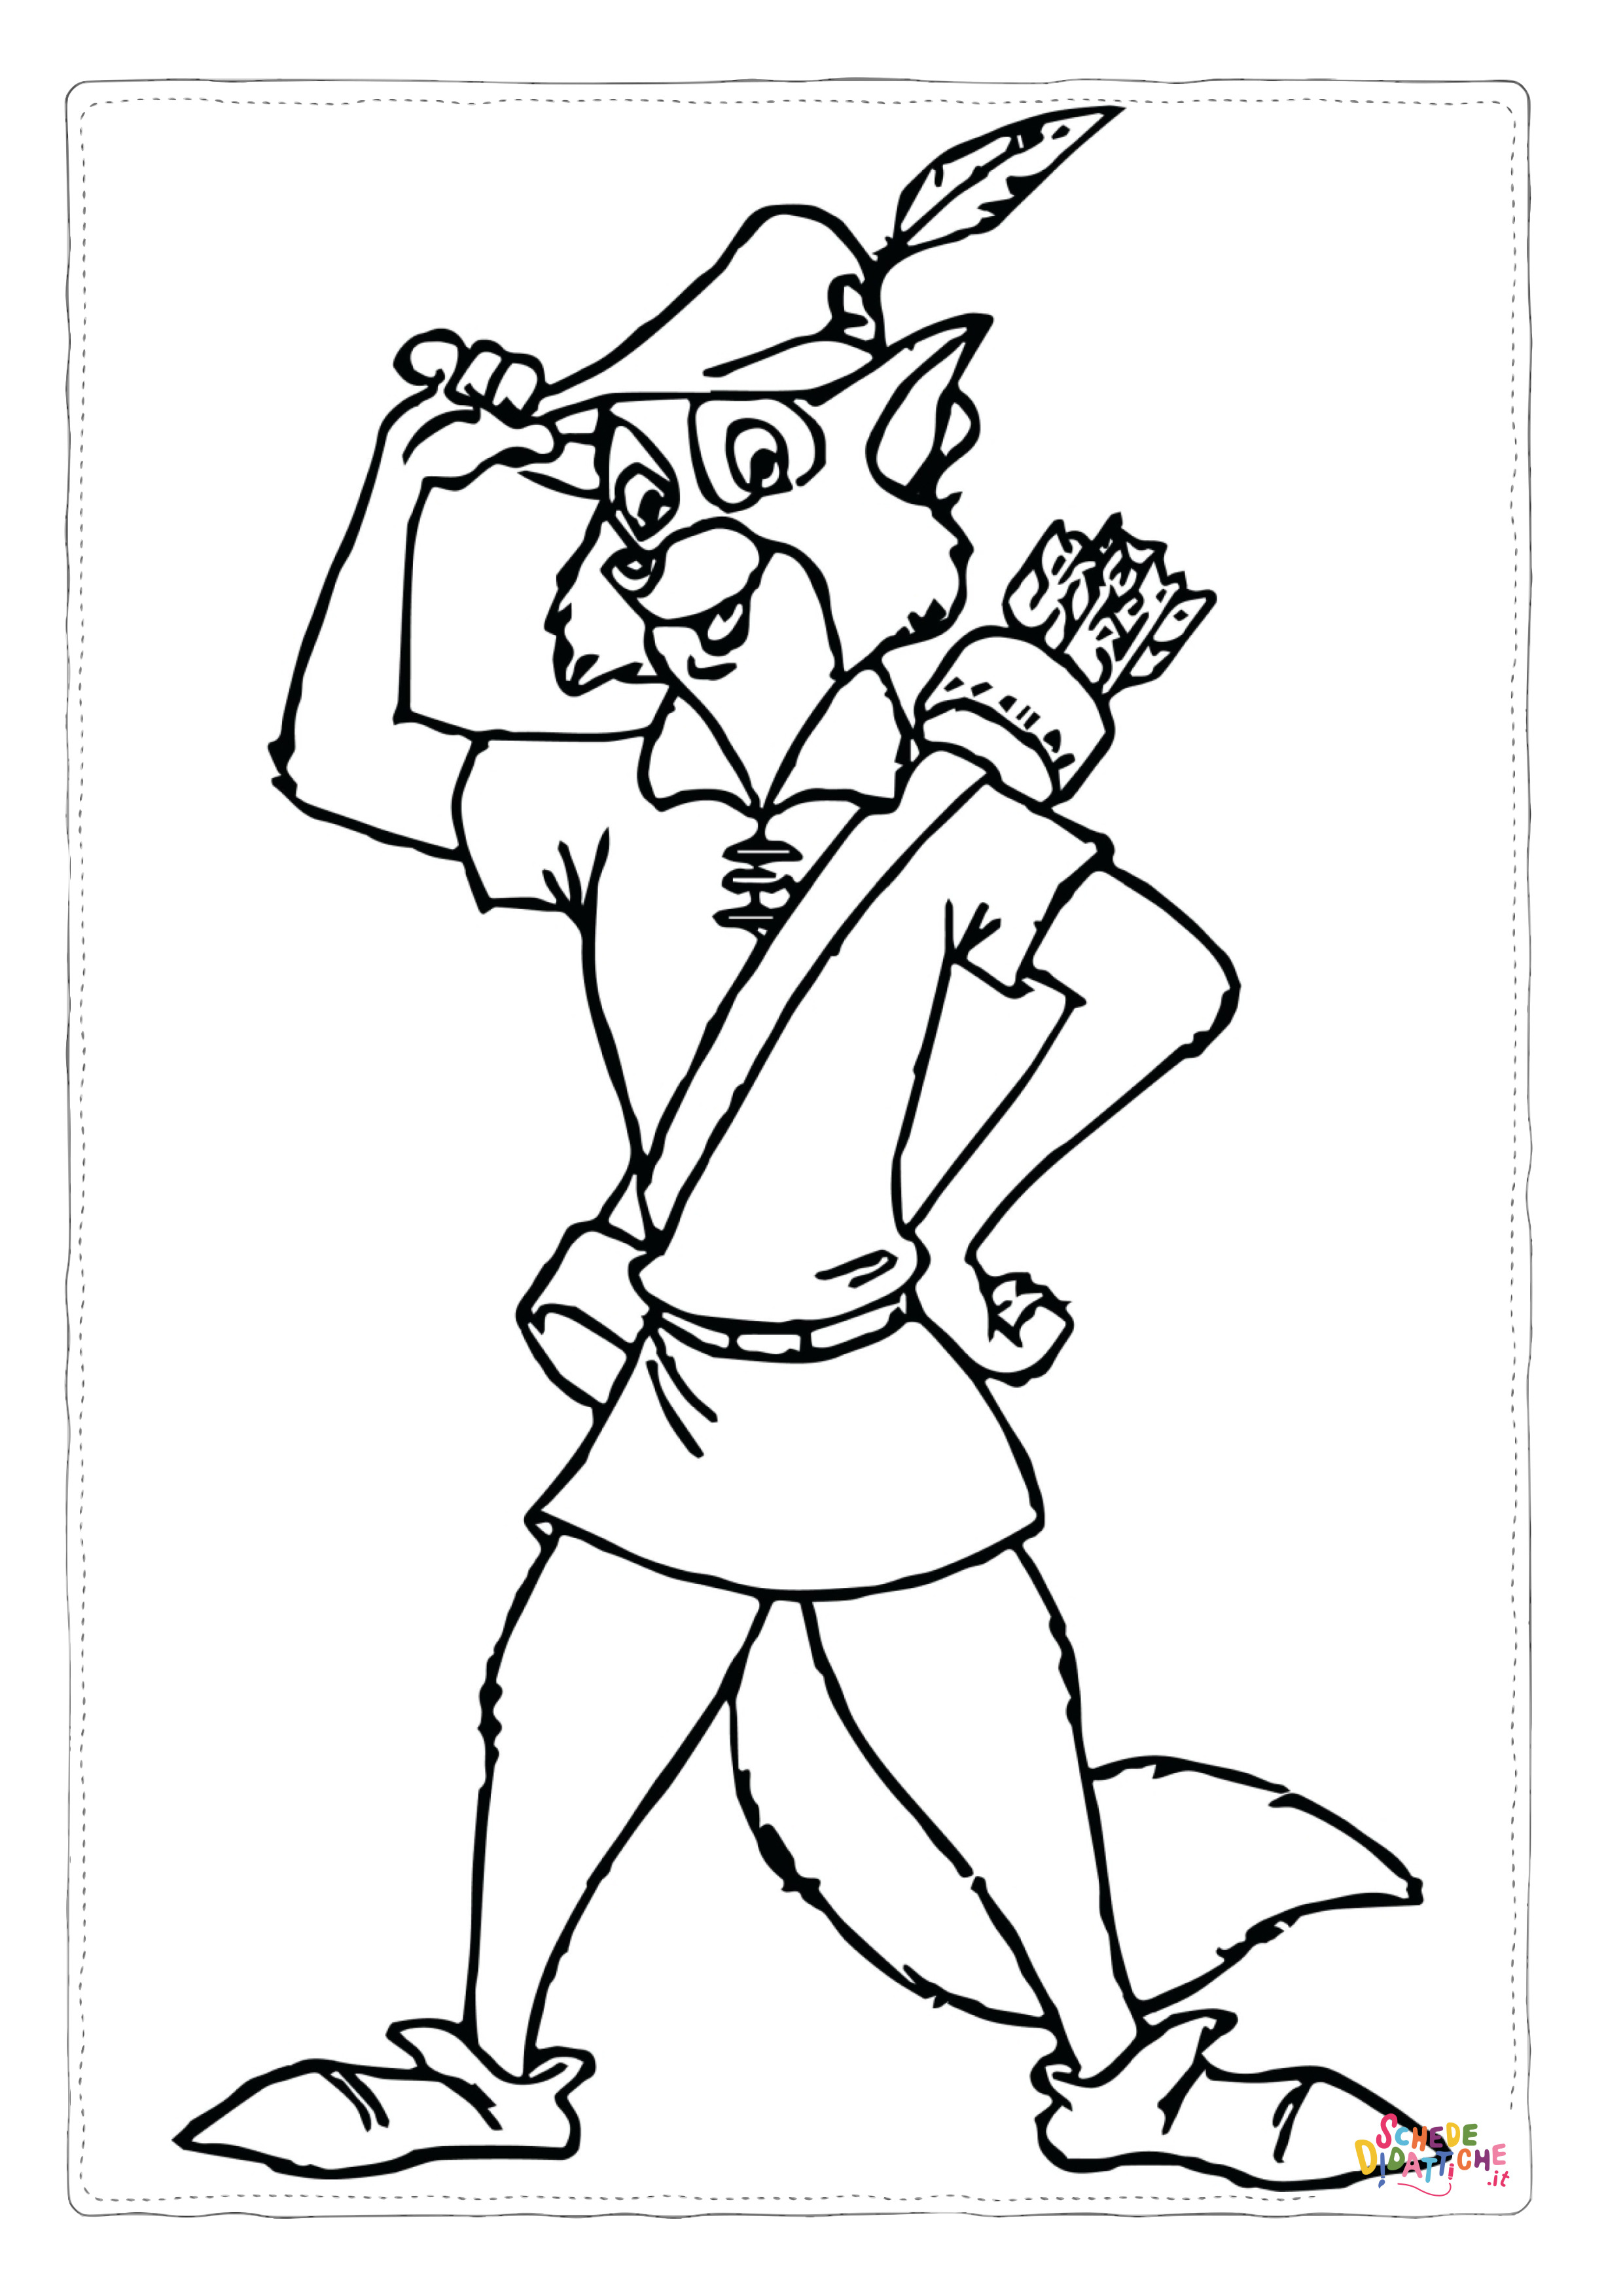 Disegno di Robin Hood da stampare e colorare 9